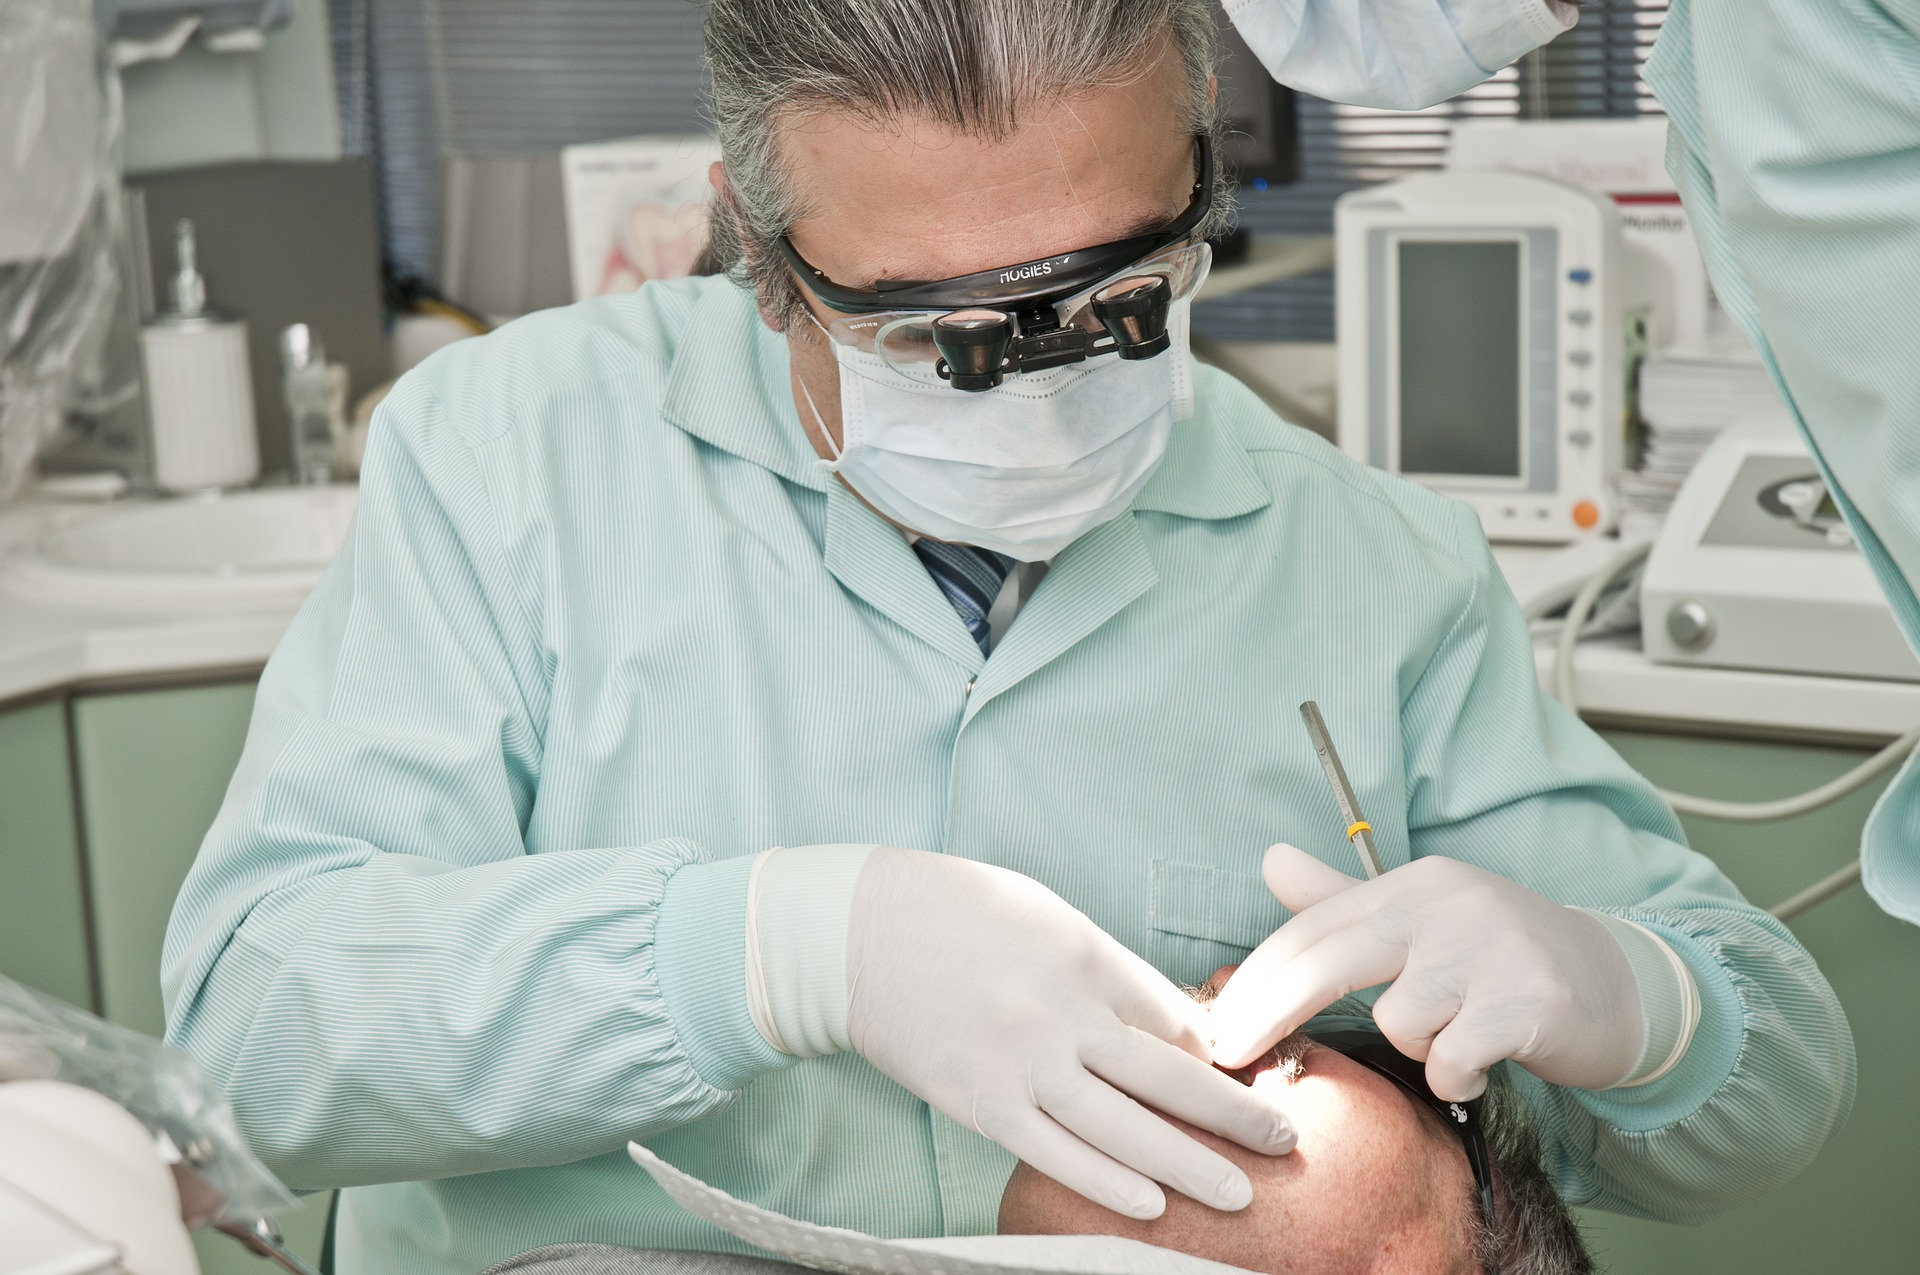 Tandlæge i Randers kan give dig flotte tandsmykker